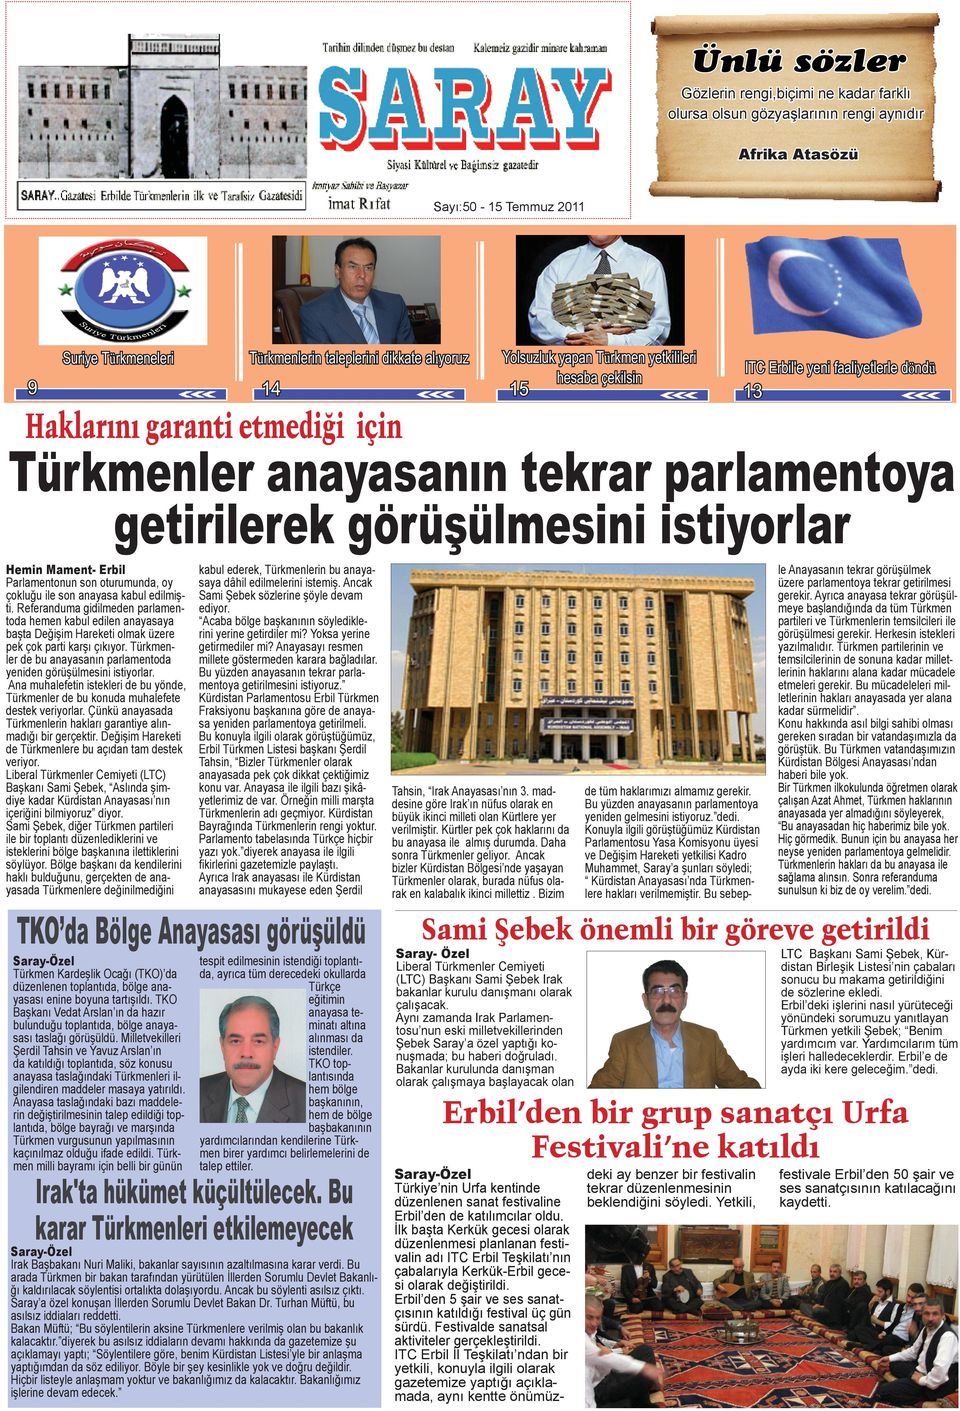 Erbil Parlamentonun son oturumunda, oy çokluğu ile son anayasa kabul edilmişti.